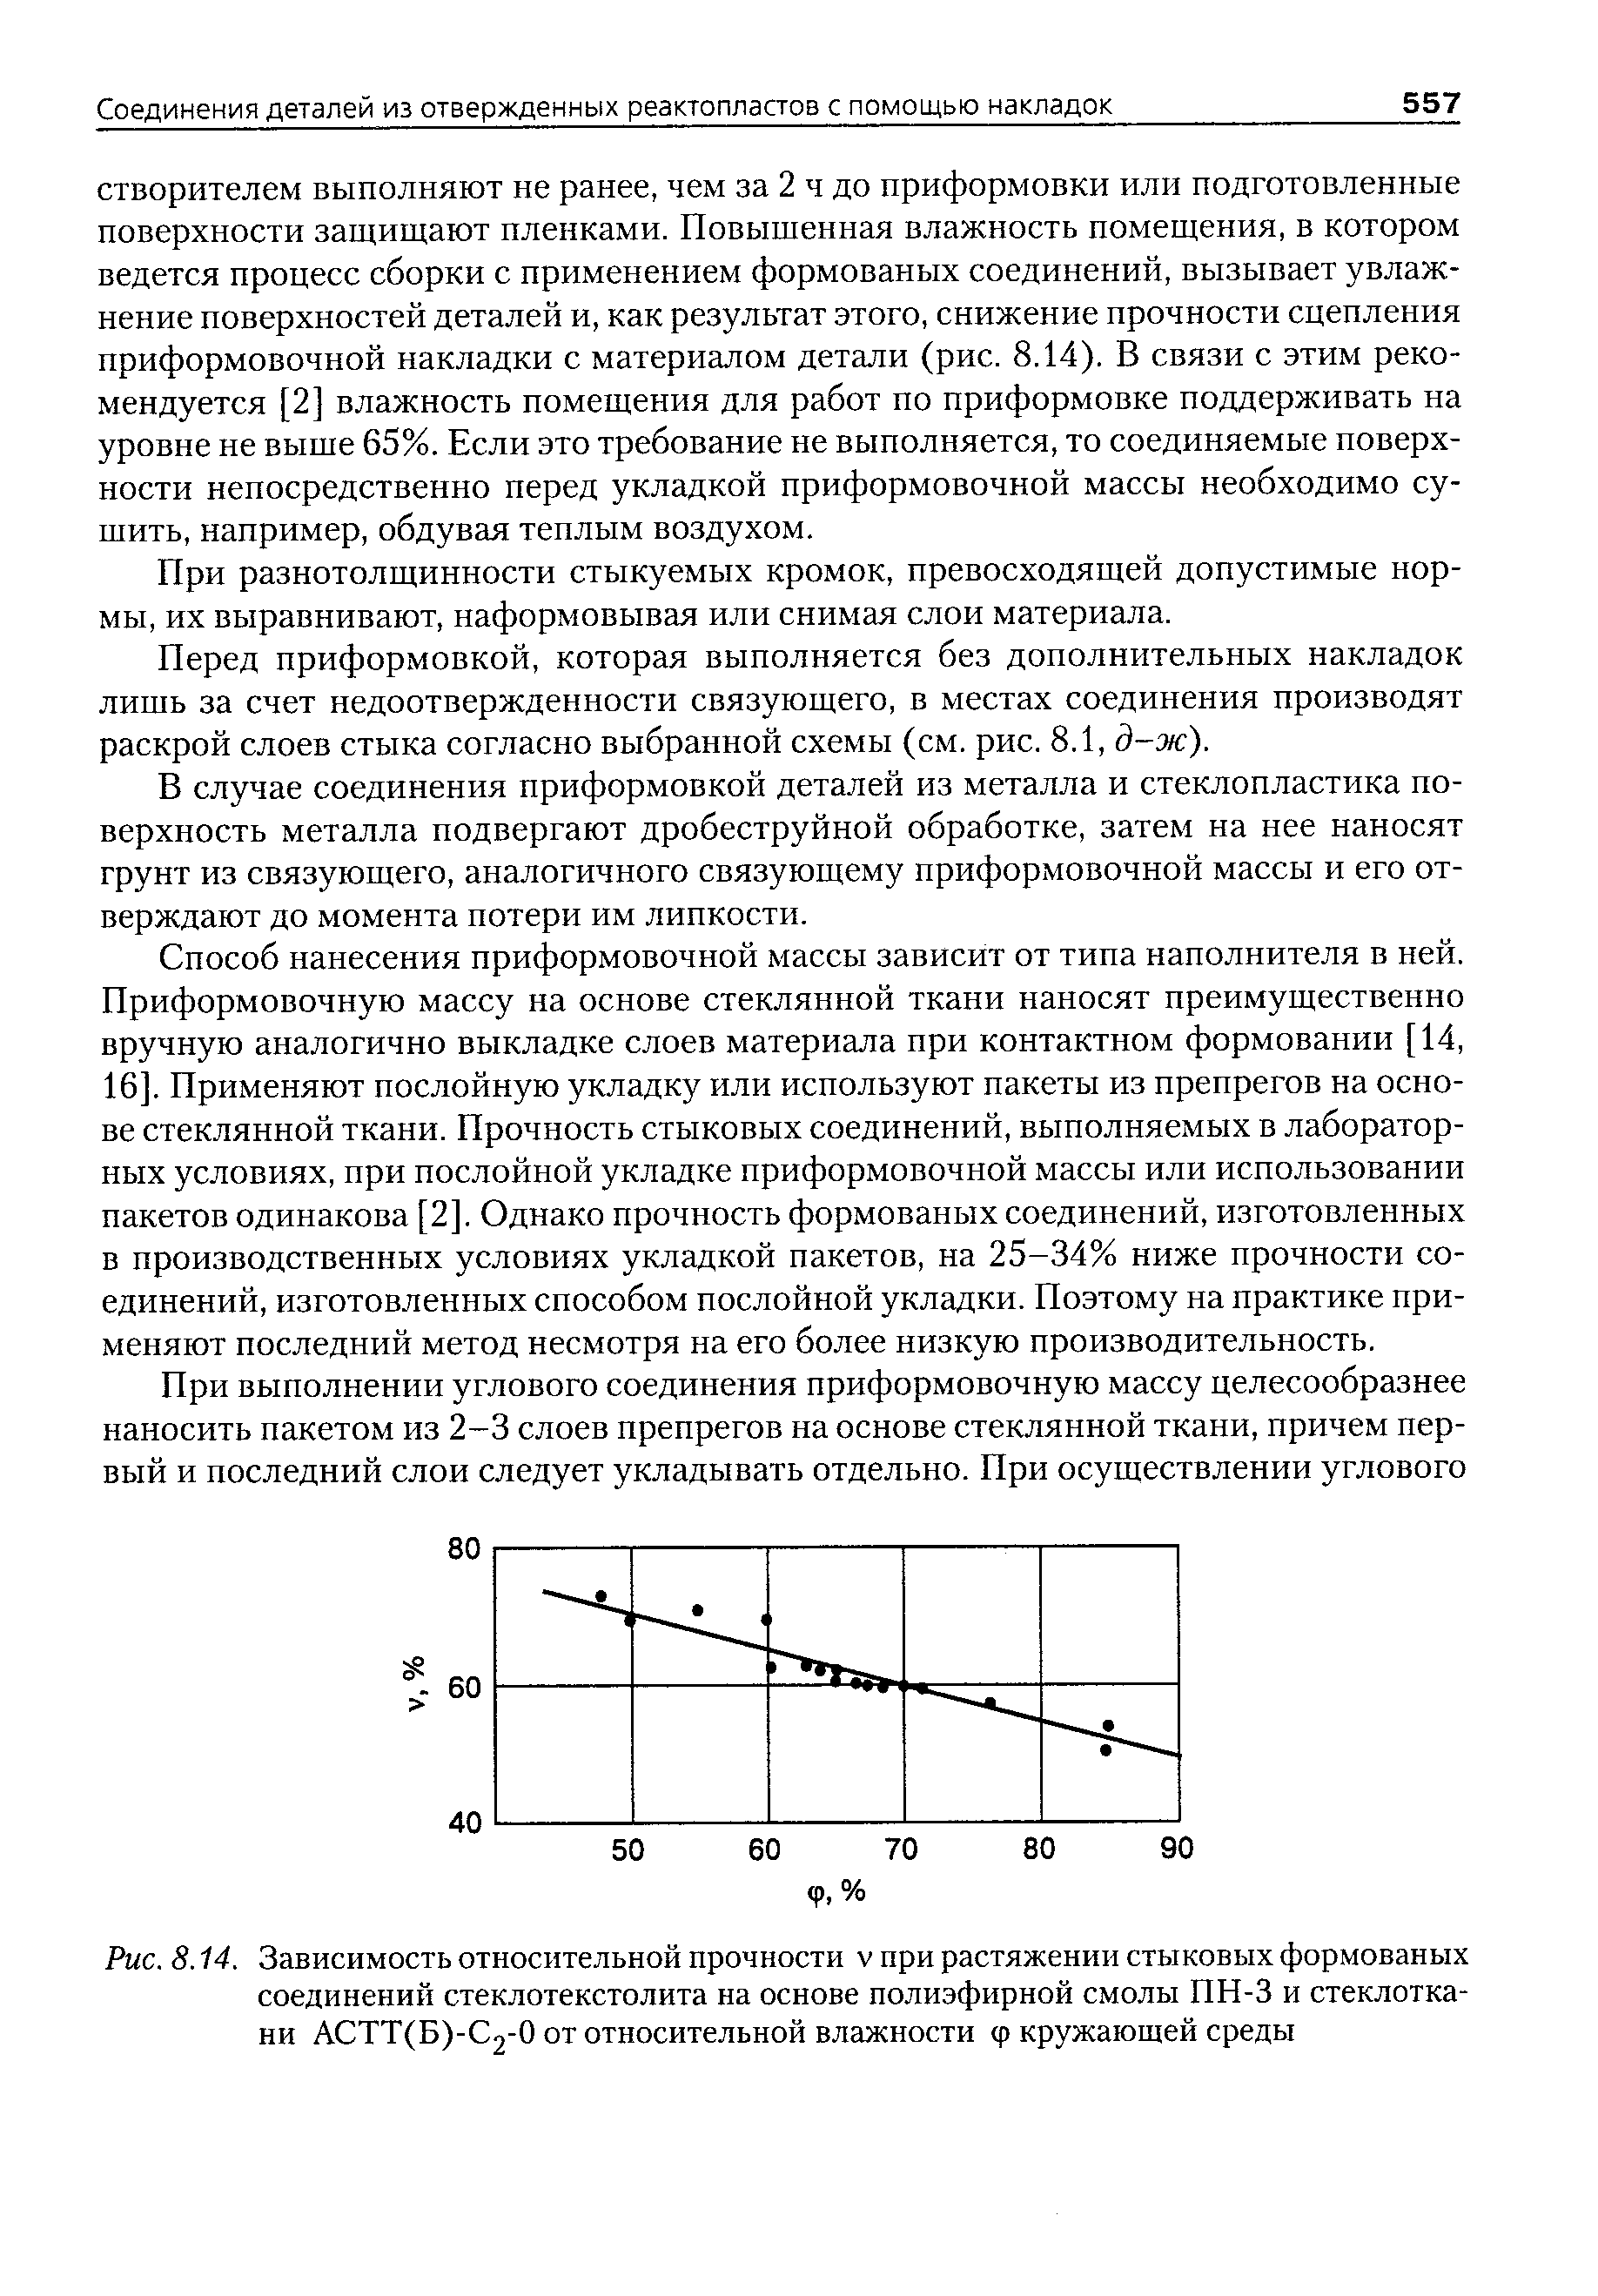 Рис. 8.14. Зависимость <a href="/info/42717">относительной прочности</a> v при растяжении стыковых формованых соединений стеклотекстолита на основе <a href="/info/33625">полиэфирной смолы</a> ПН-3 и стеклоткани АСТТ(Б)-С2-0 от <a href="/info/716">относительной влажности</a> ф кружающей среды
